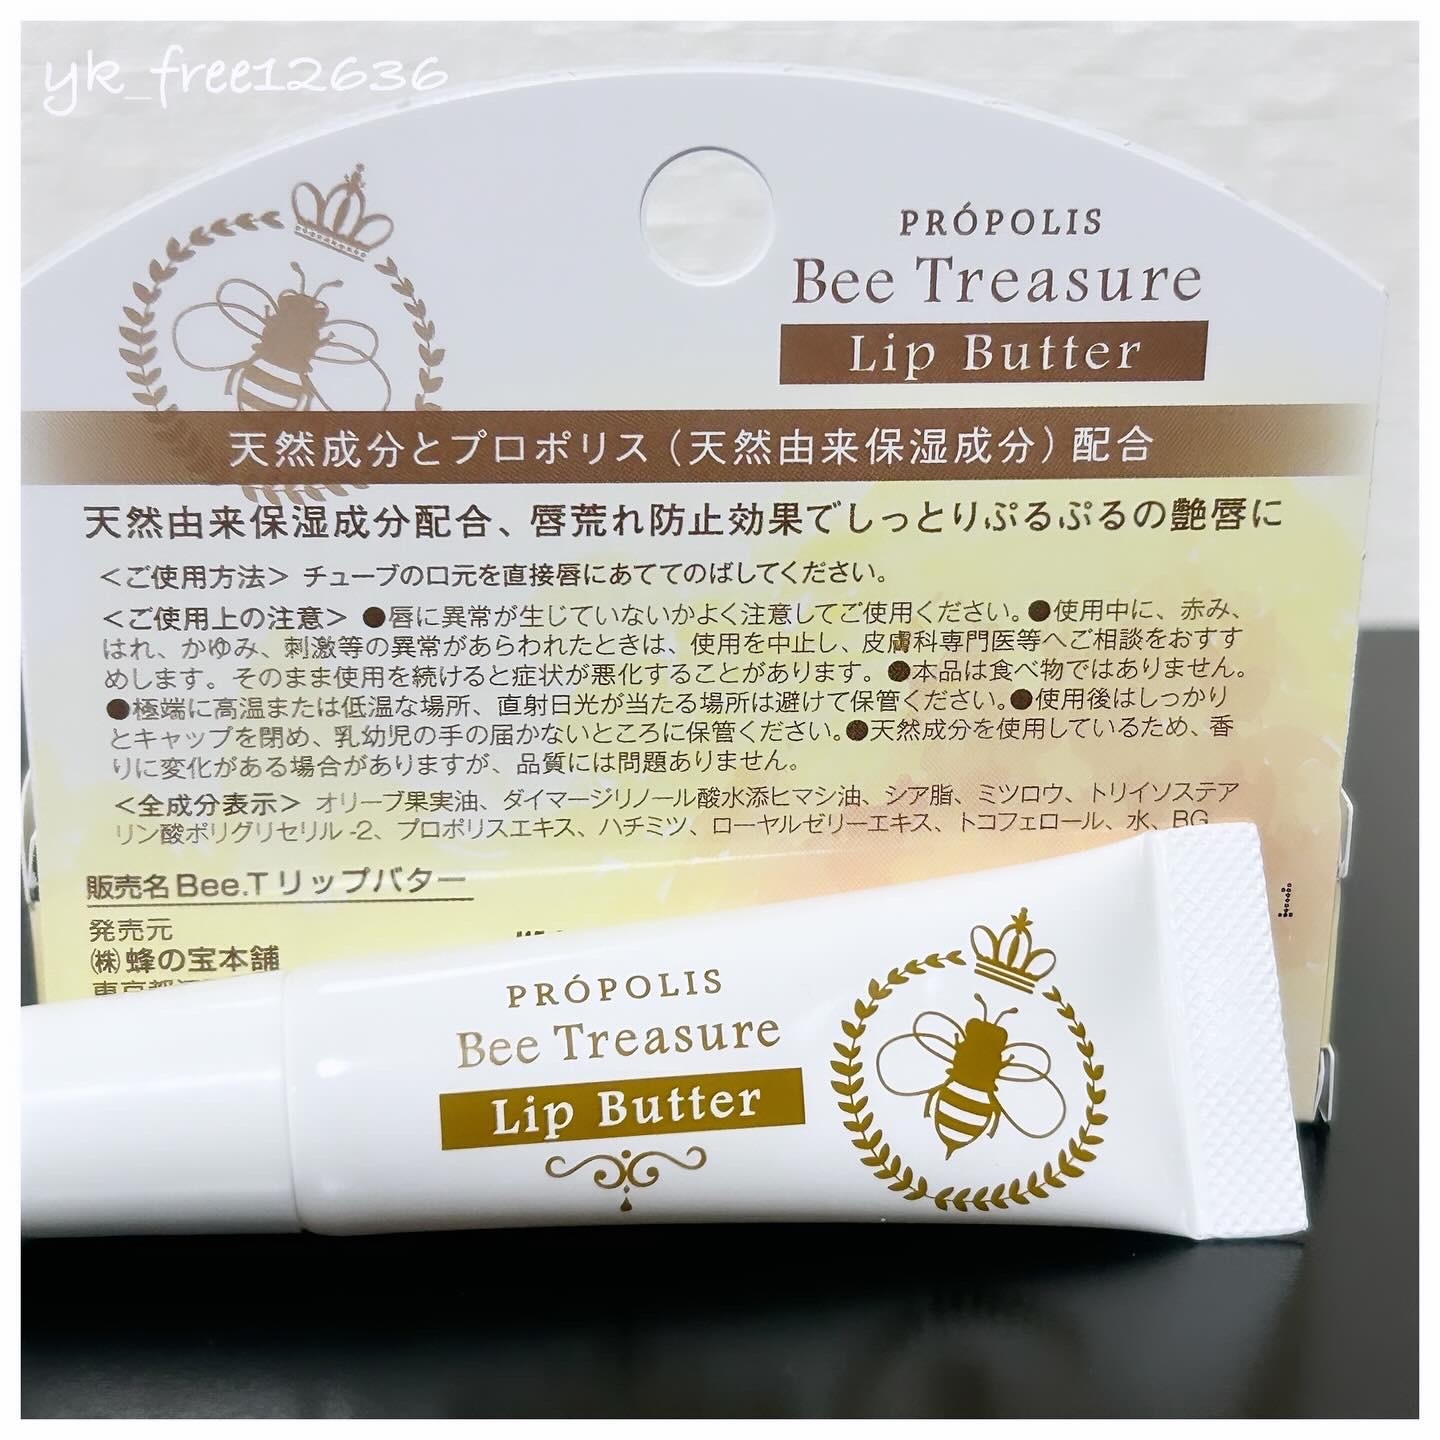 BeeTreasure(ビートレジャー) Lip Butter～リップバター～の良い点・メリットに関するyk_free12636さんの口コミ画像2